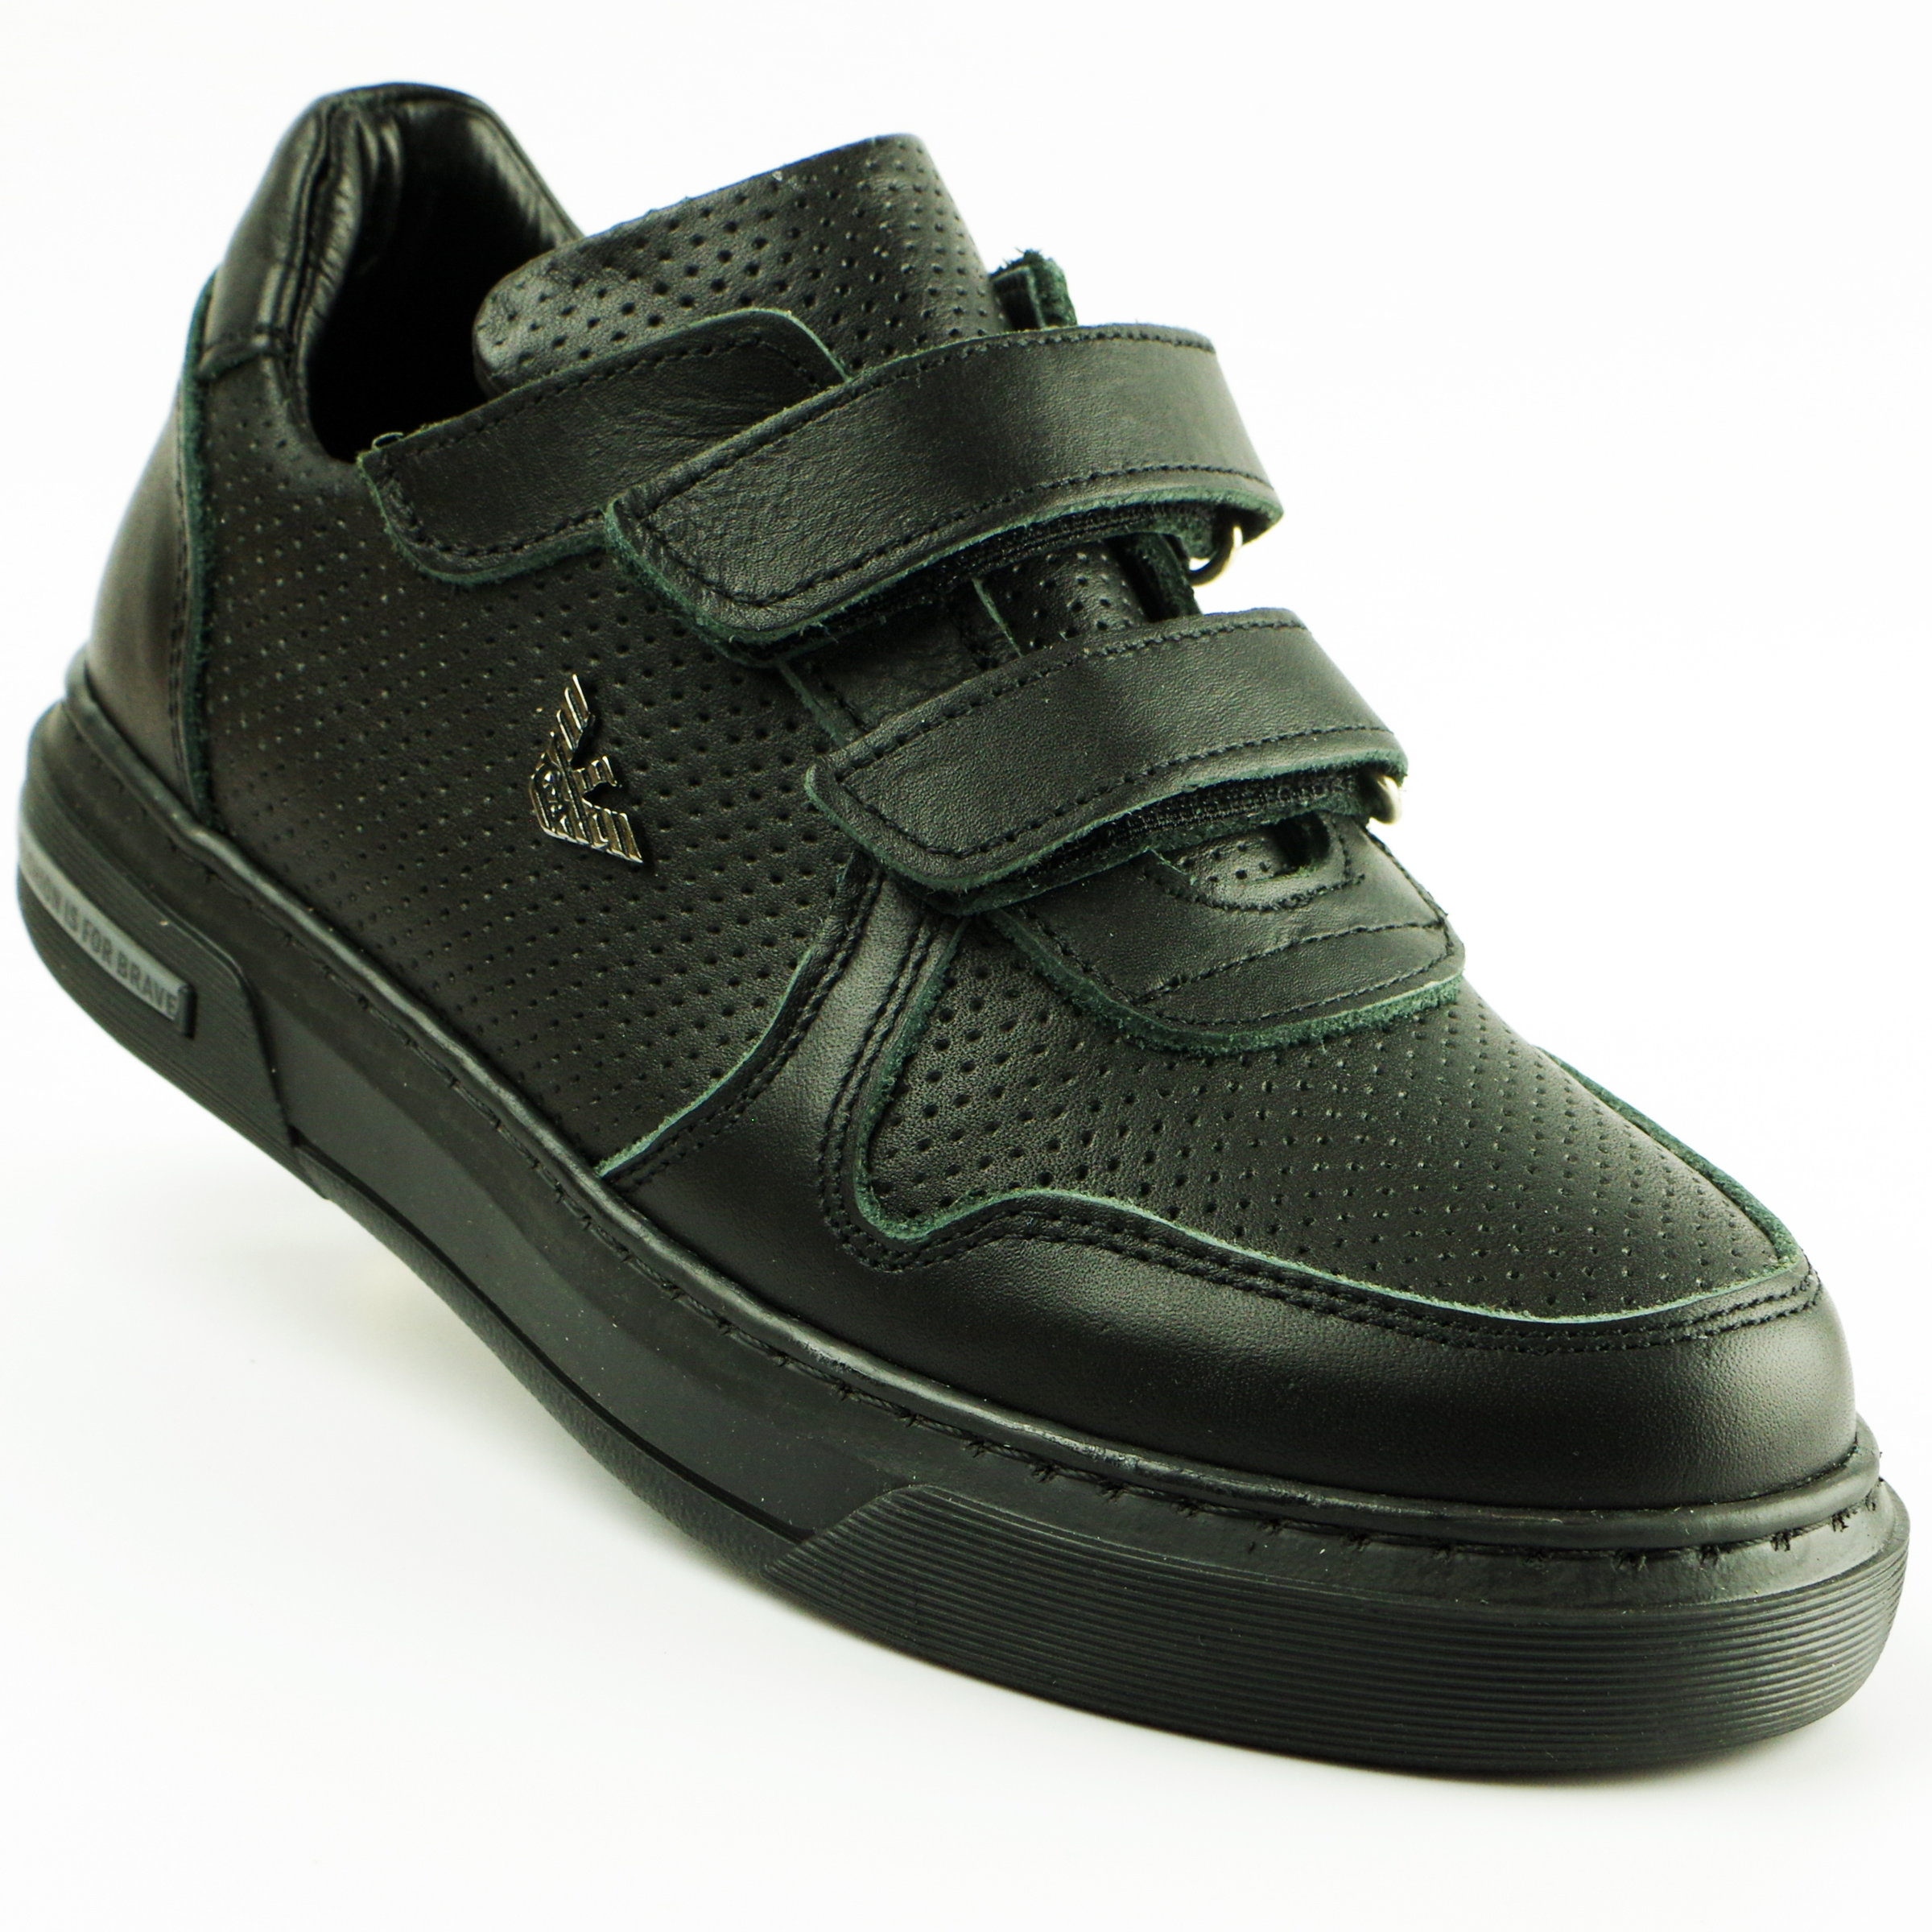 Туфлі дитячі (2119) для хлопчика, матеріал Натуральна шкіра, Чорний колір, 31-36 розміри – Sole Kids